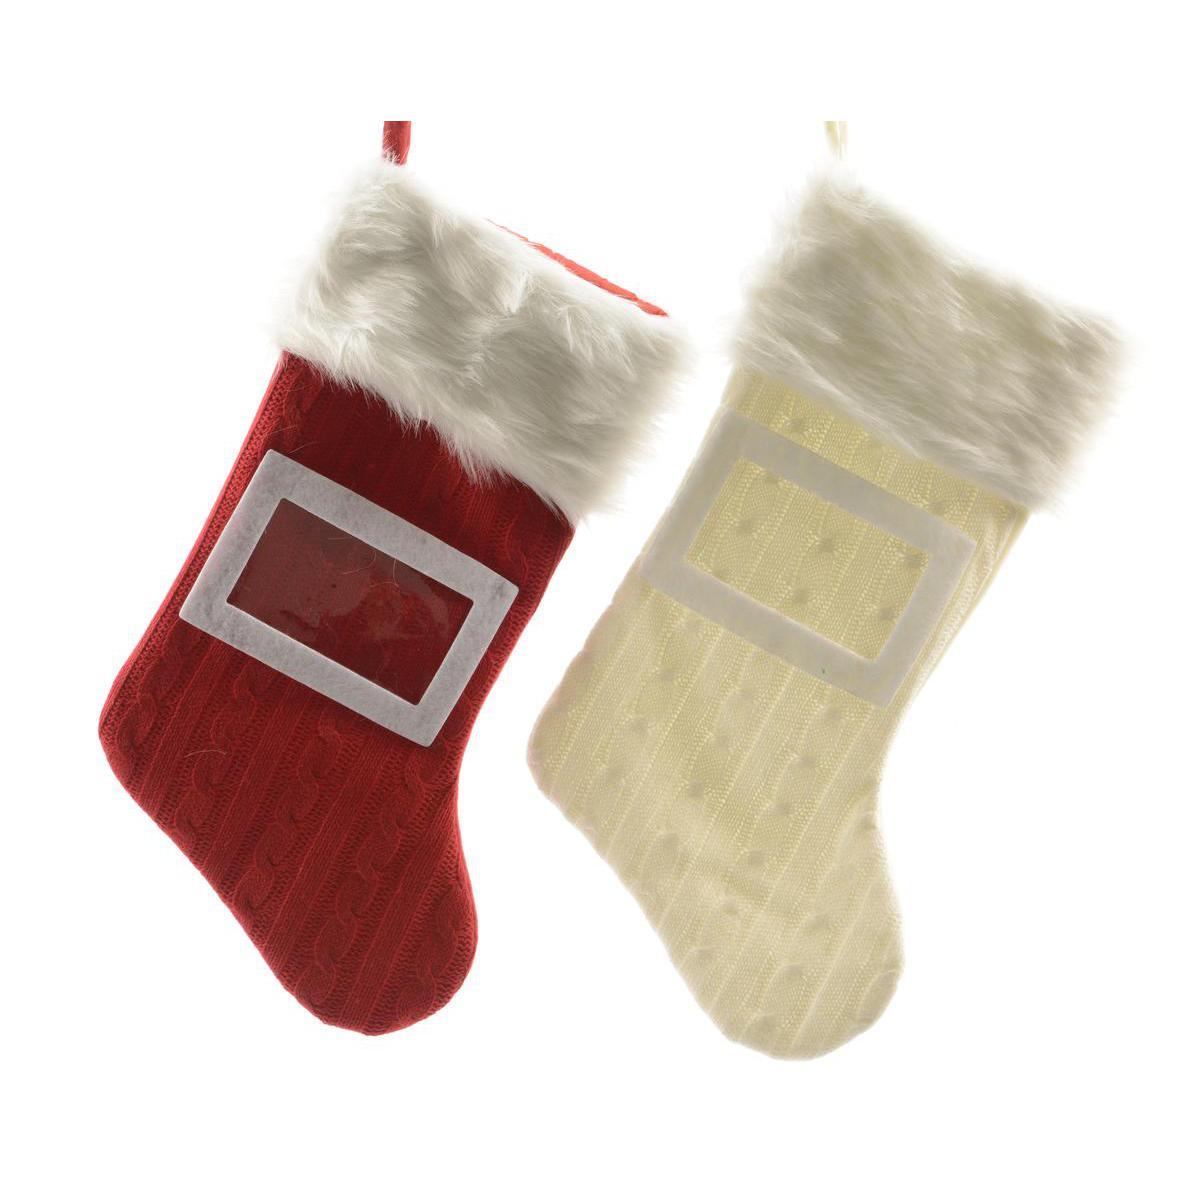 Suspension chaussette porte photo - Polyester - H 45 cm - Différents coloris